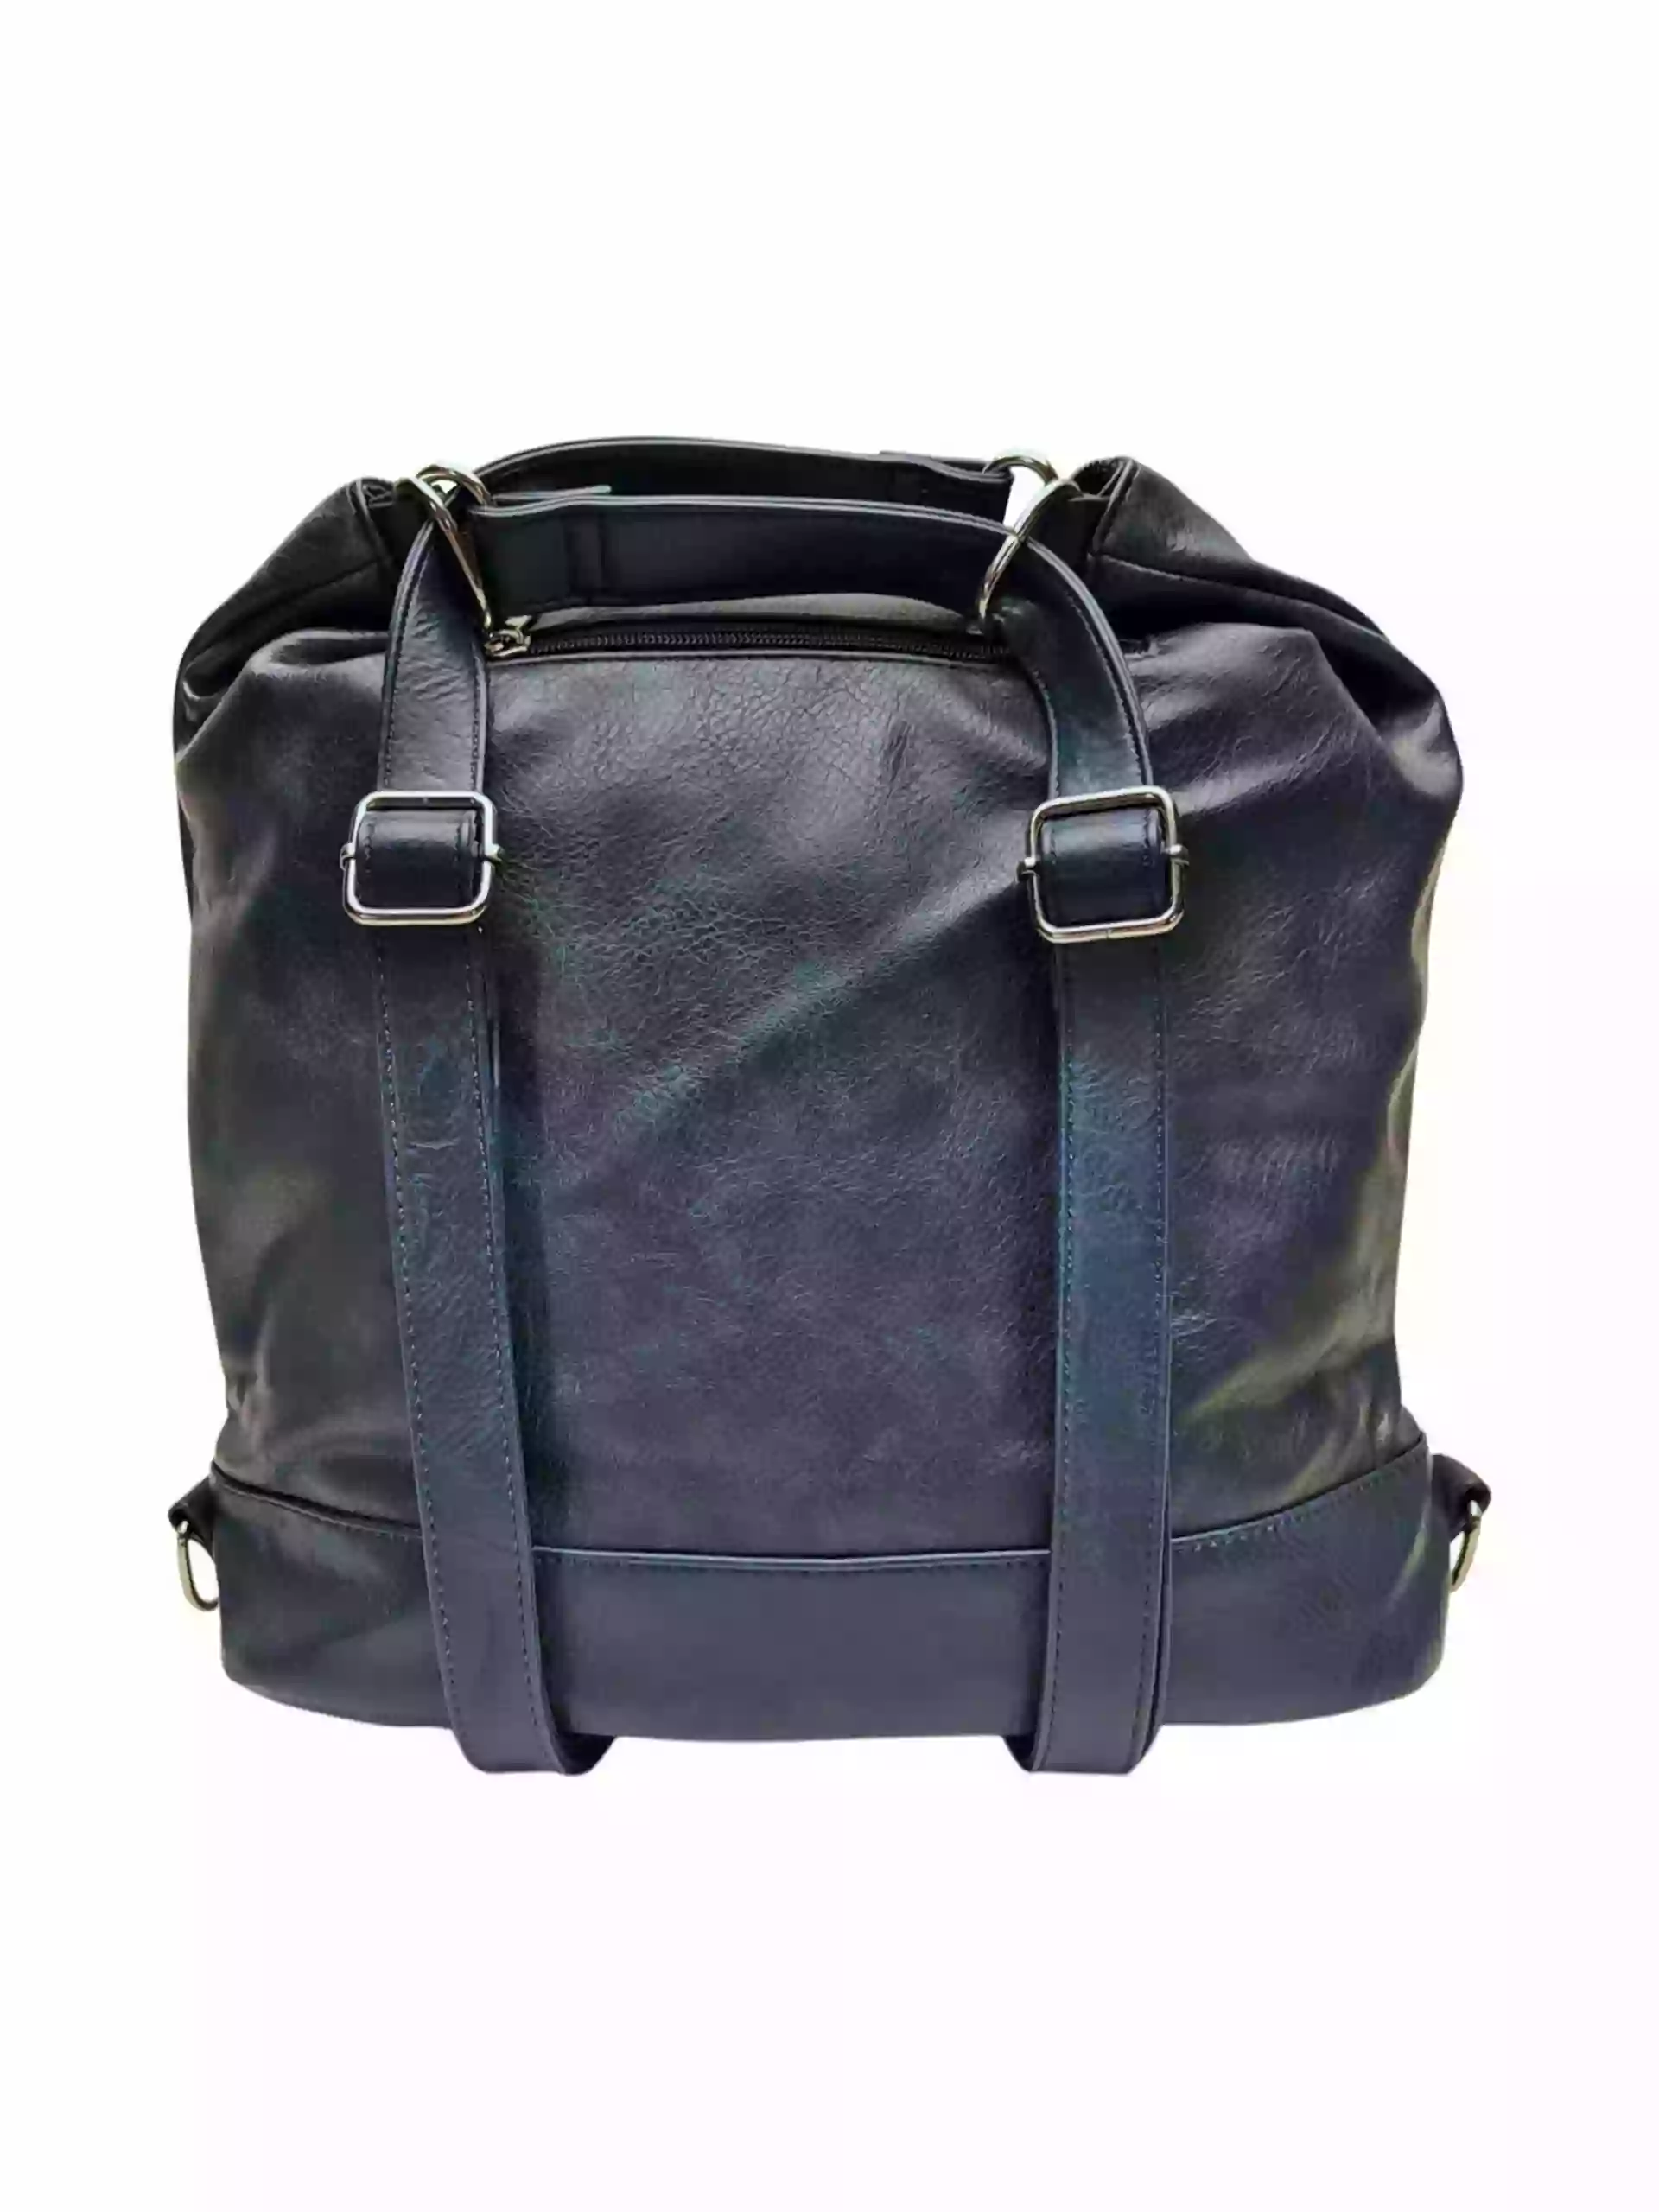 Velký tmavě modrý kabelko-batoh s kapsami, Tapple, H23906, zadní strana kabelko-batohu s popruhy